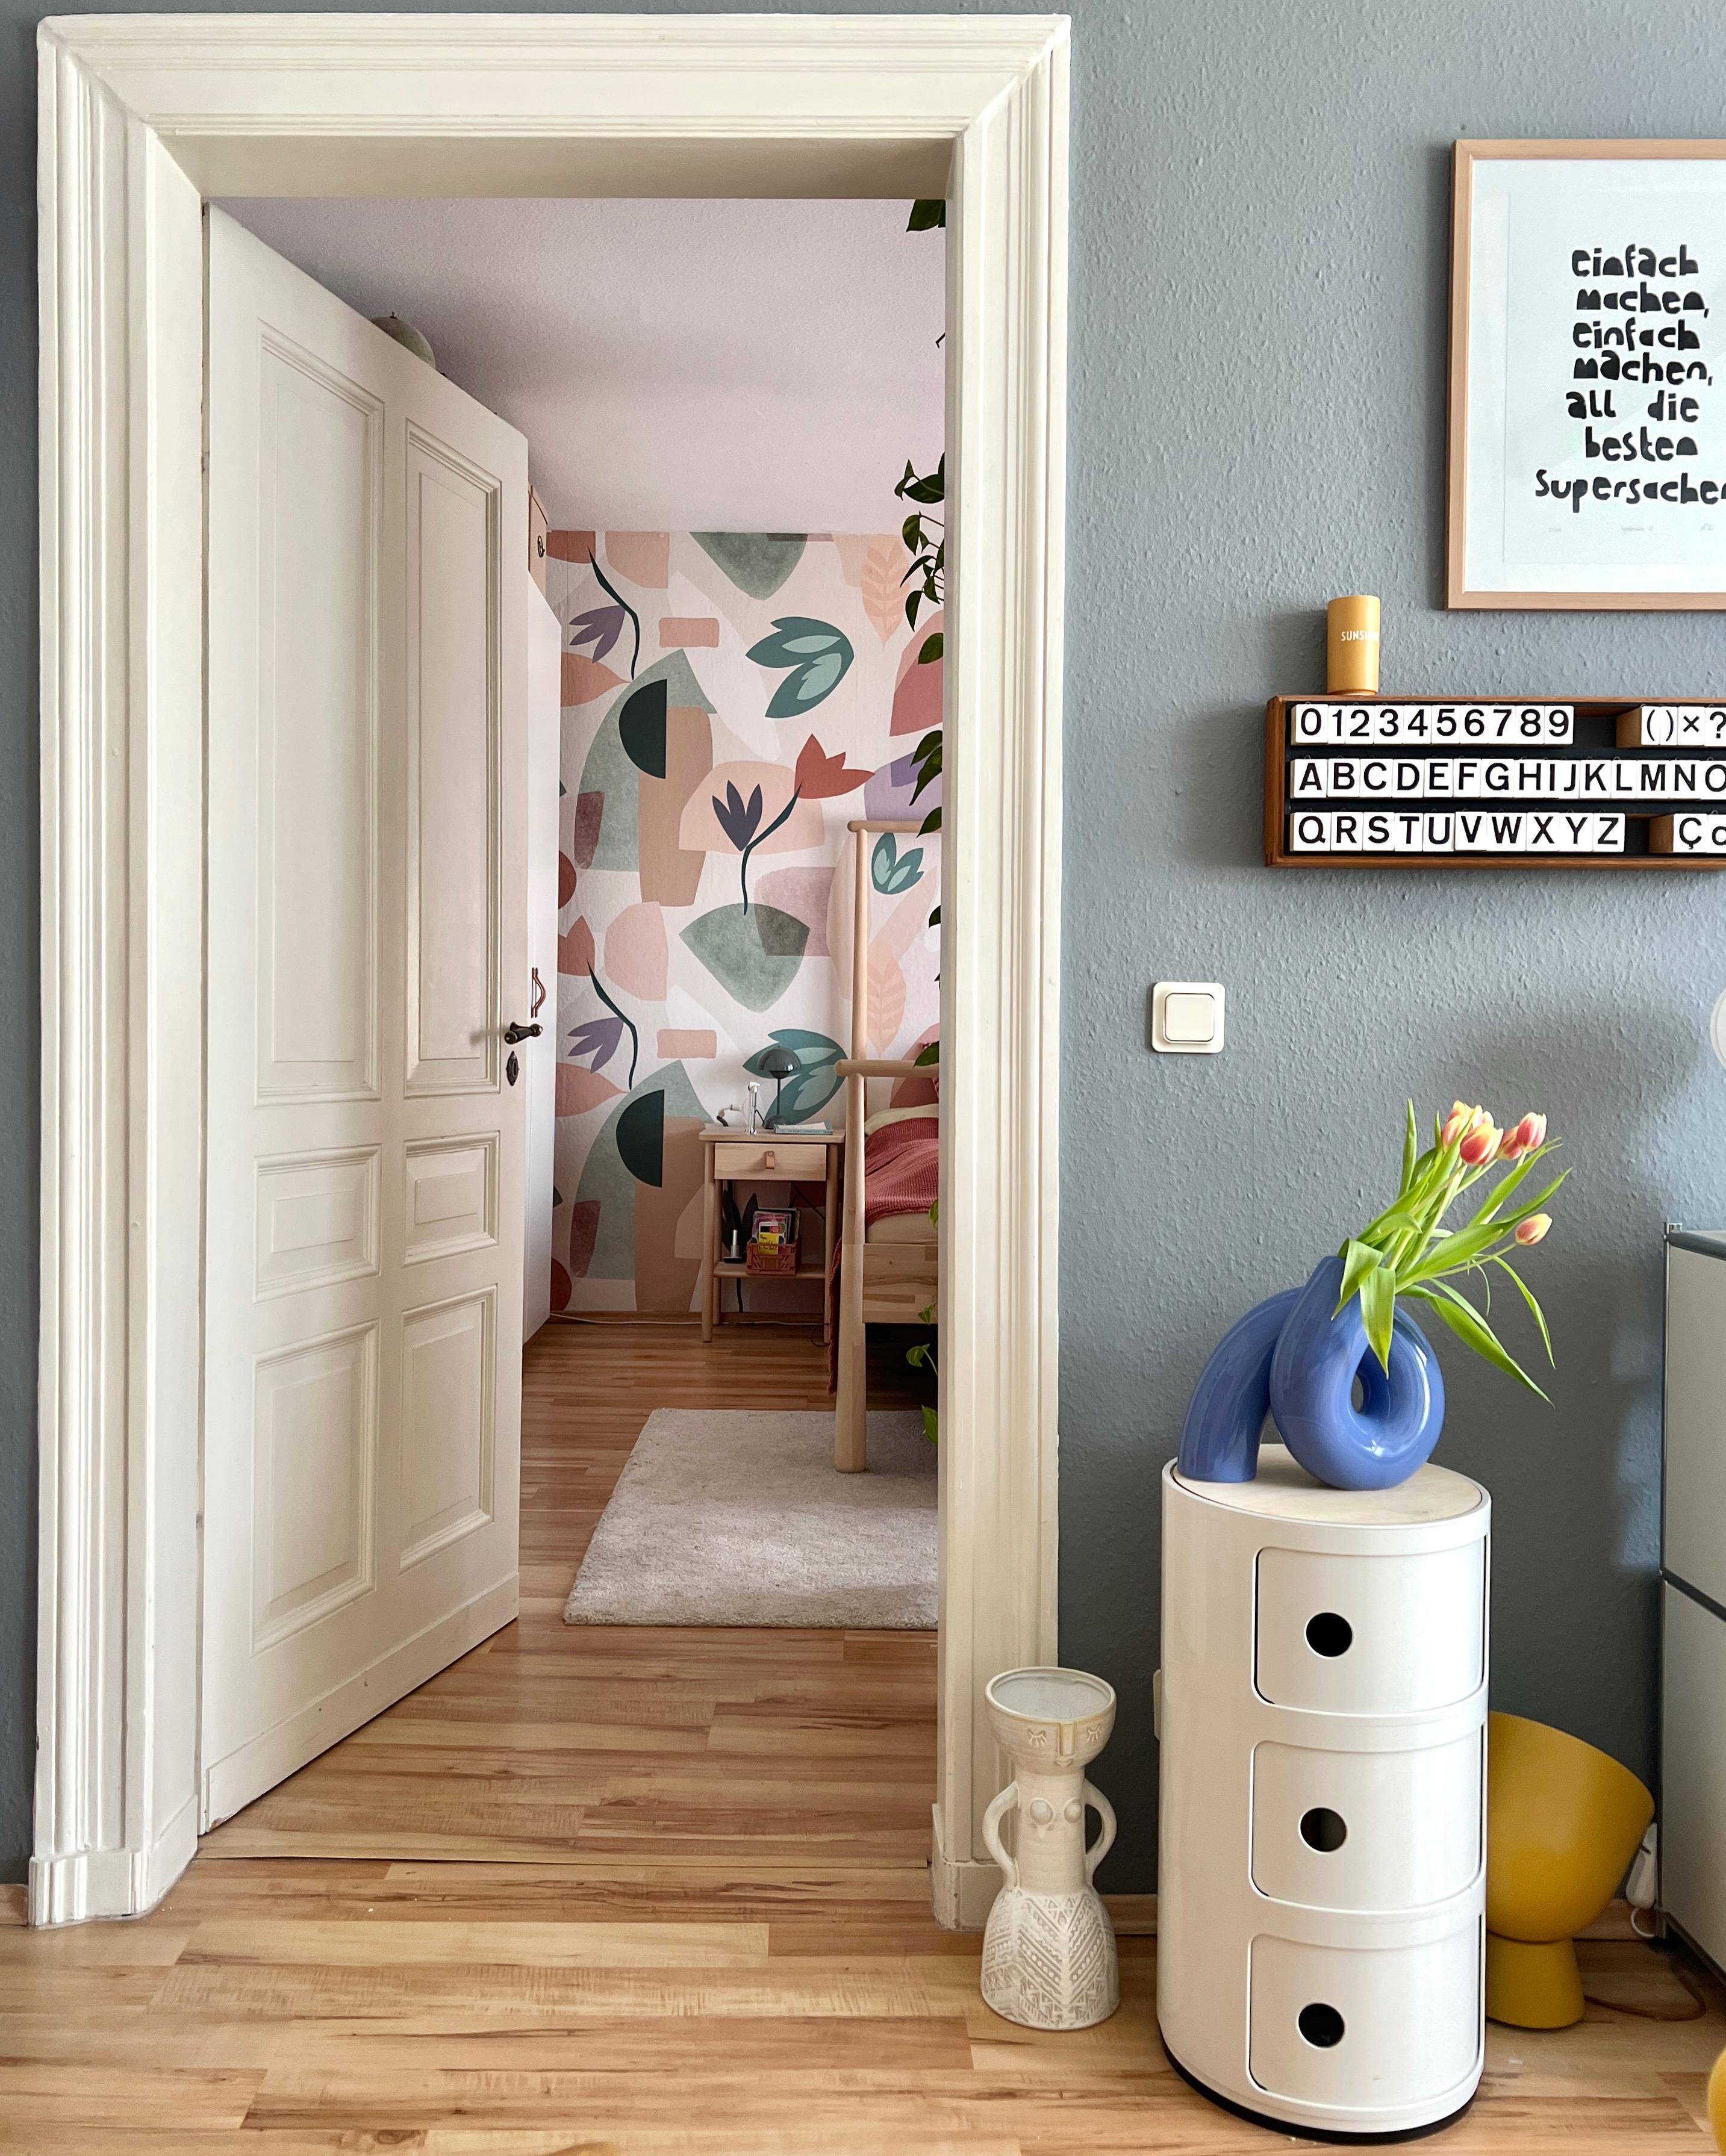 #interior #interiordesign #couchliebt #wohnzimmer #vintage #blumen #frühling #schlafzimmer #componibili #vase #tapete 